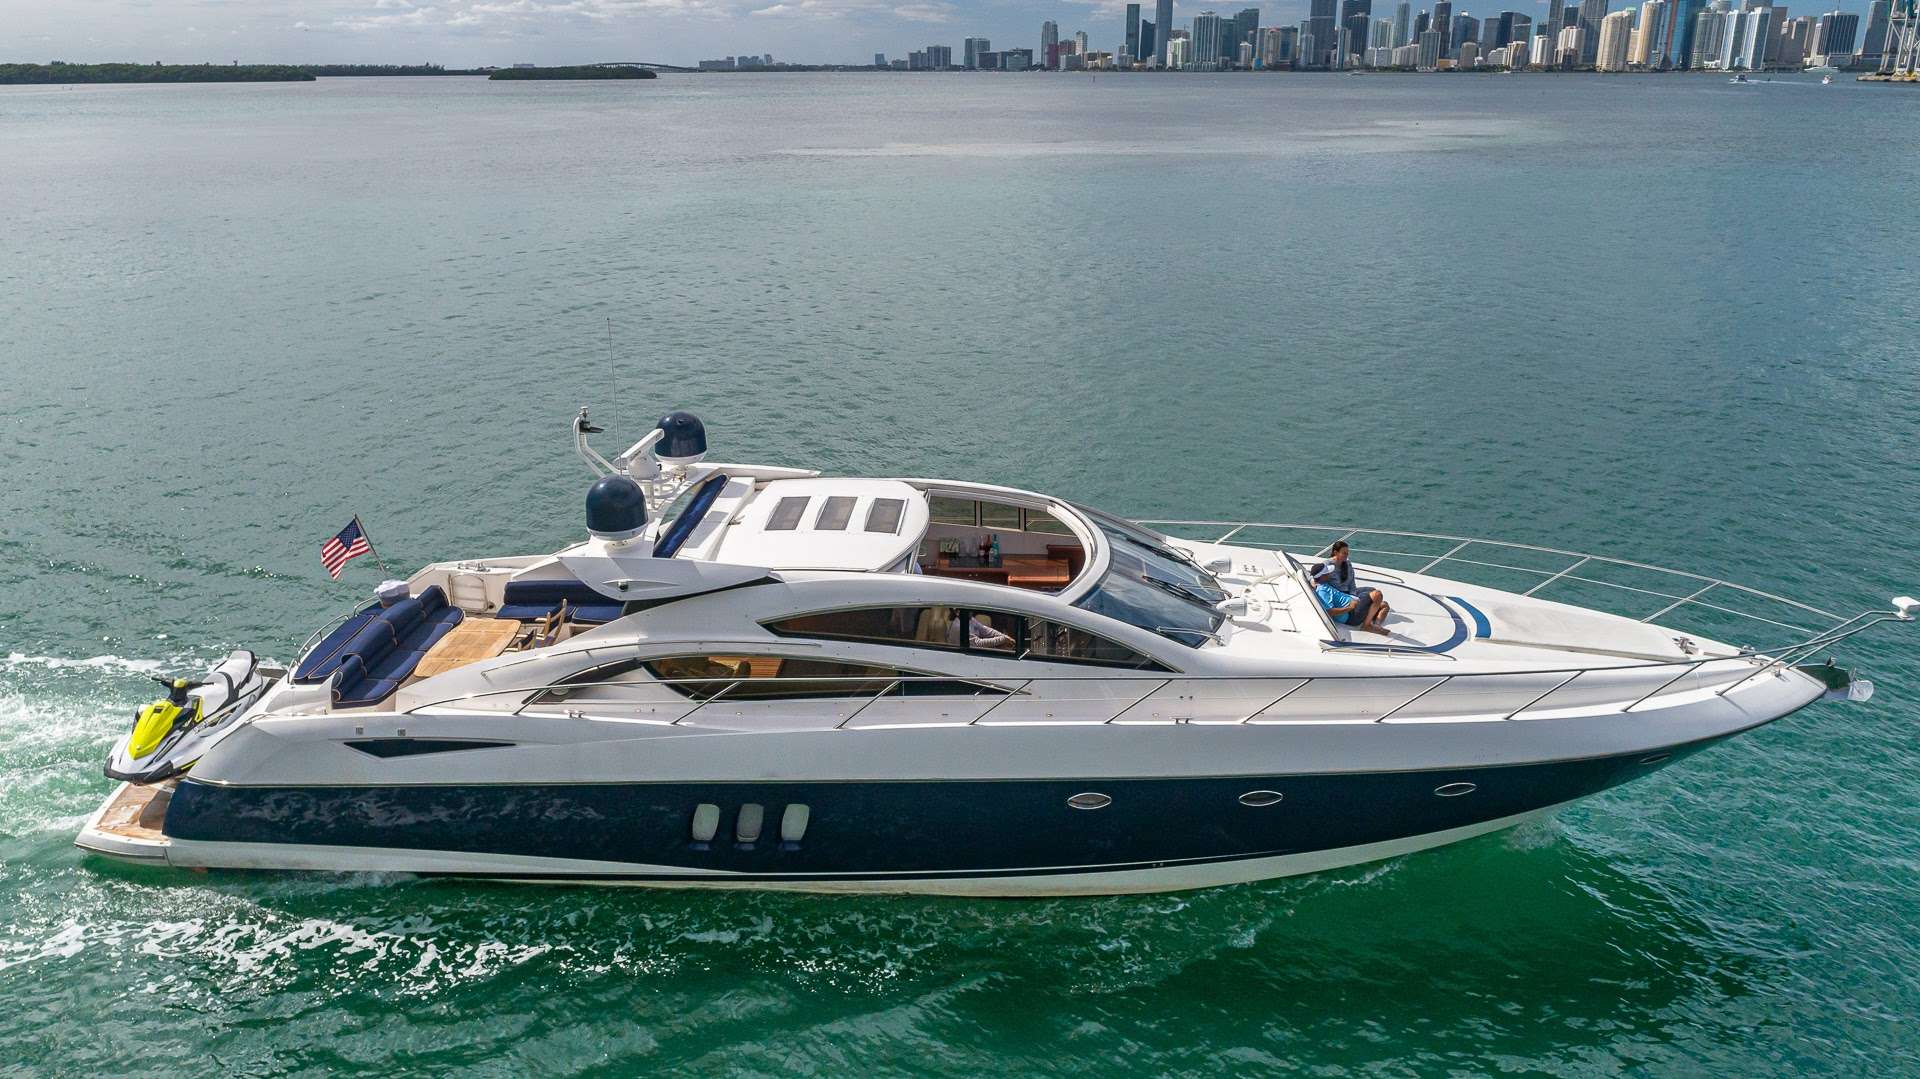 Yacht 75 - Luxury yacht charter Bahamas & Boat hire in Bahamas New Providence Nassau Palm Cay One Marina 1